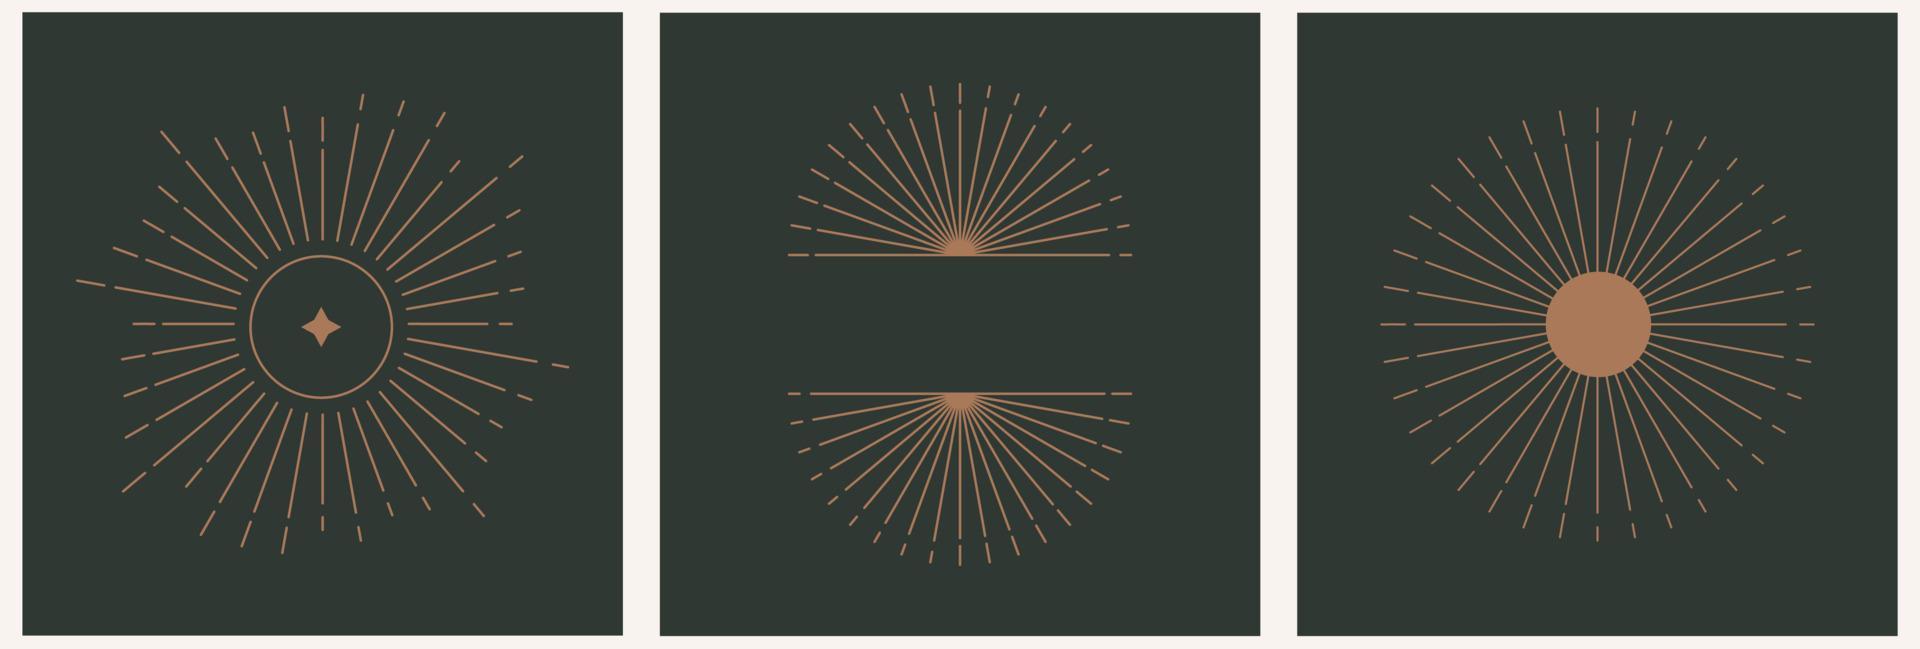 logotipo de modelo de conjunto linear místico com pôr do sol geométrico, arcos abstratos em estilo linear moderno em um fundo escuro. impressão abstrata celestial e mágica. vetor